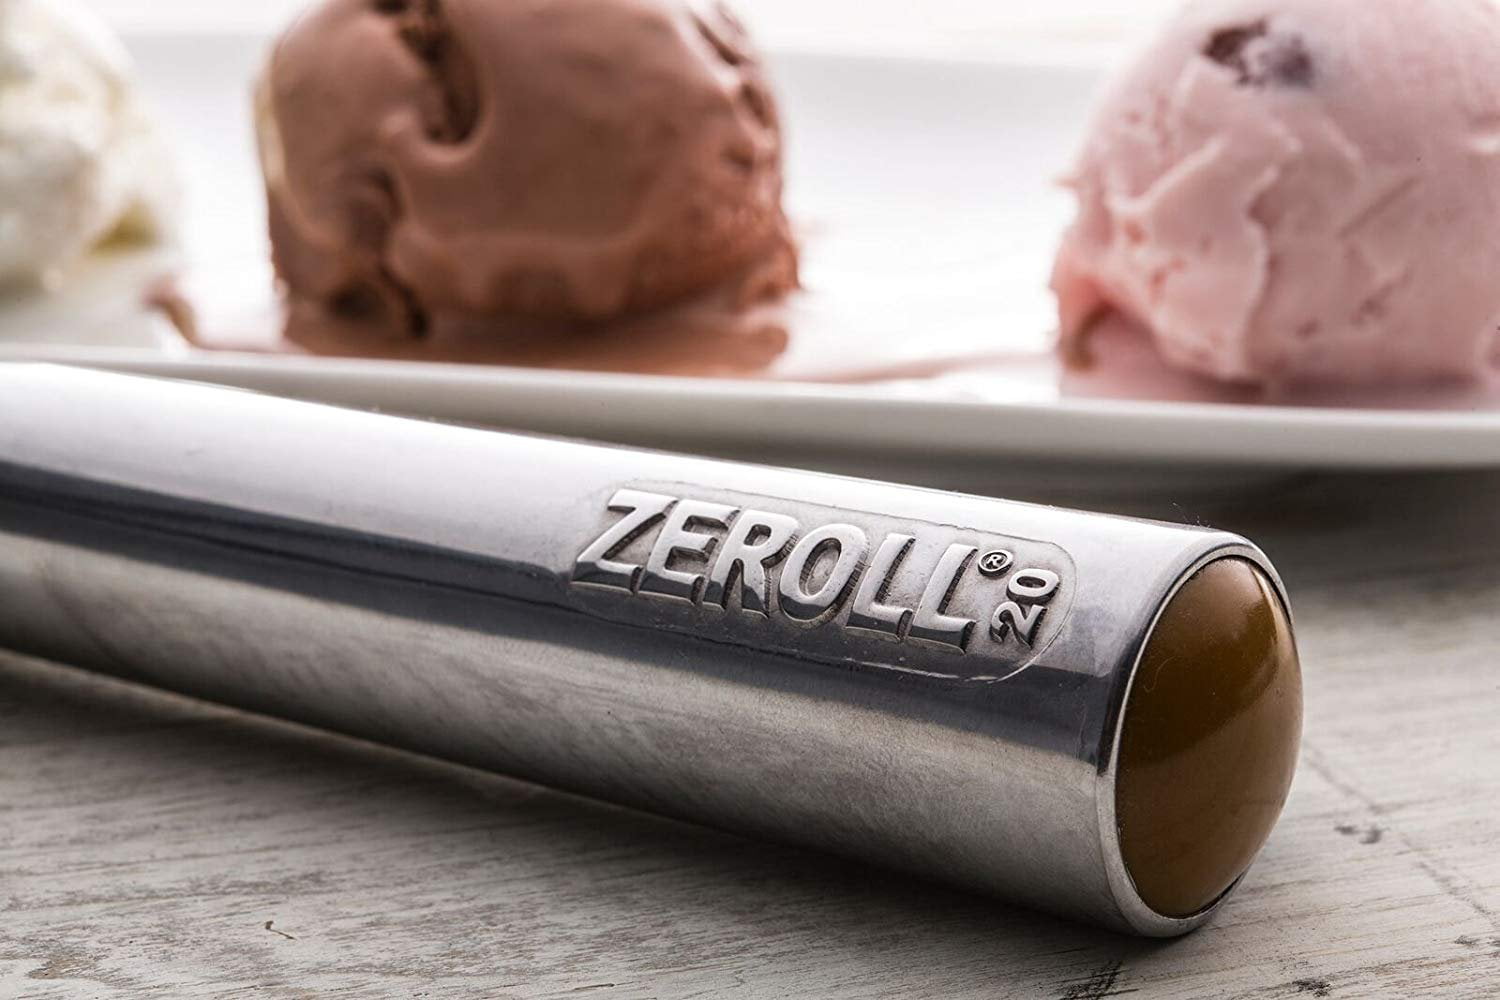 Zeroll - 1020 - 2 oz Ice Cream Scoop 